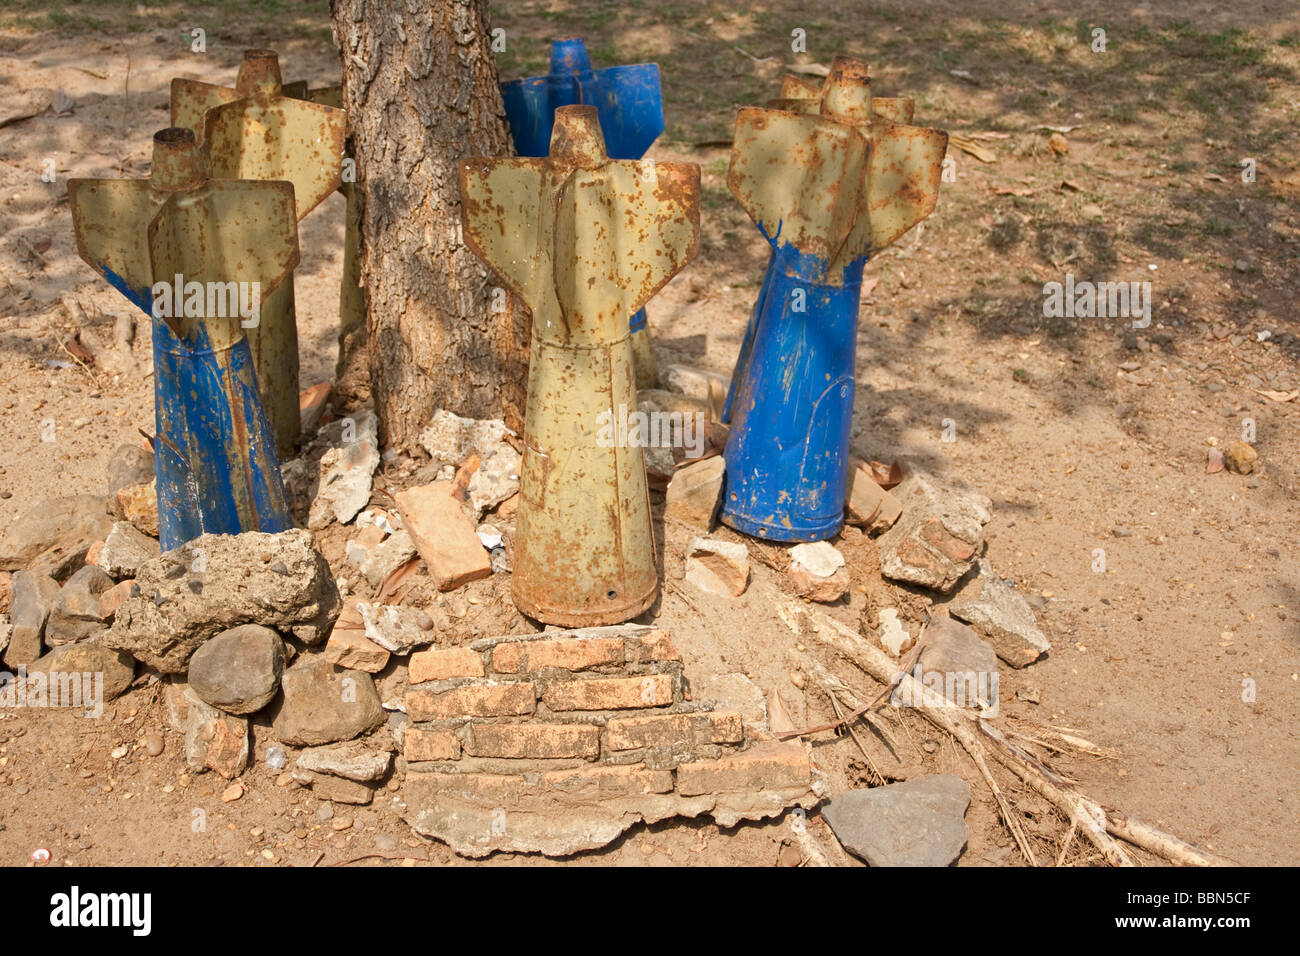 Vietnam war debris in Laos Stock Photo